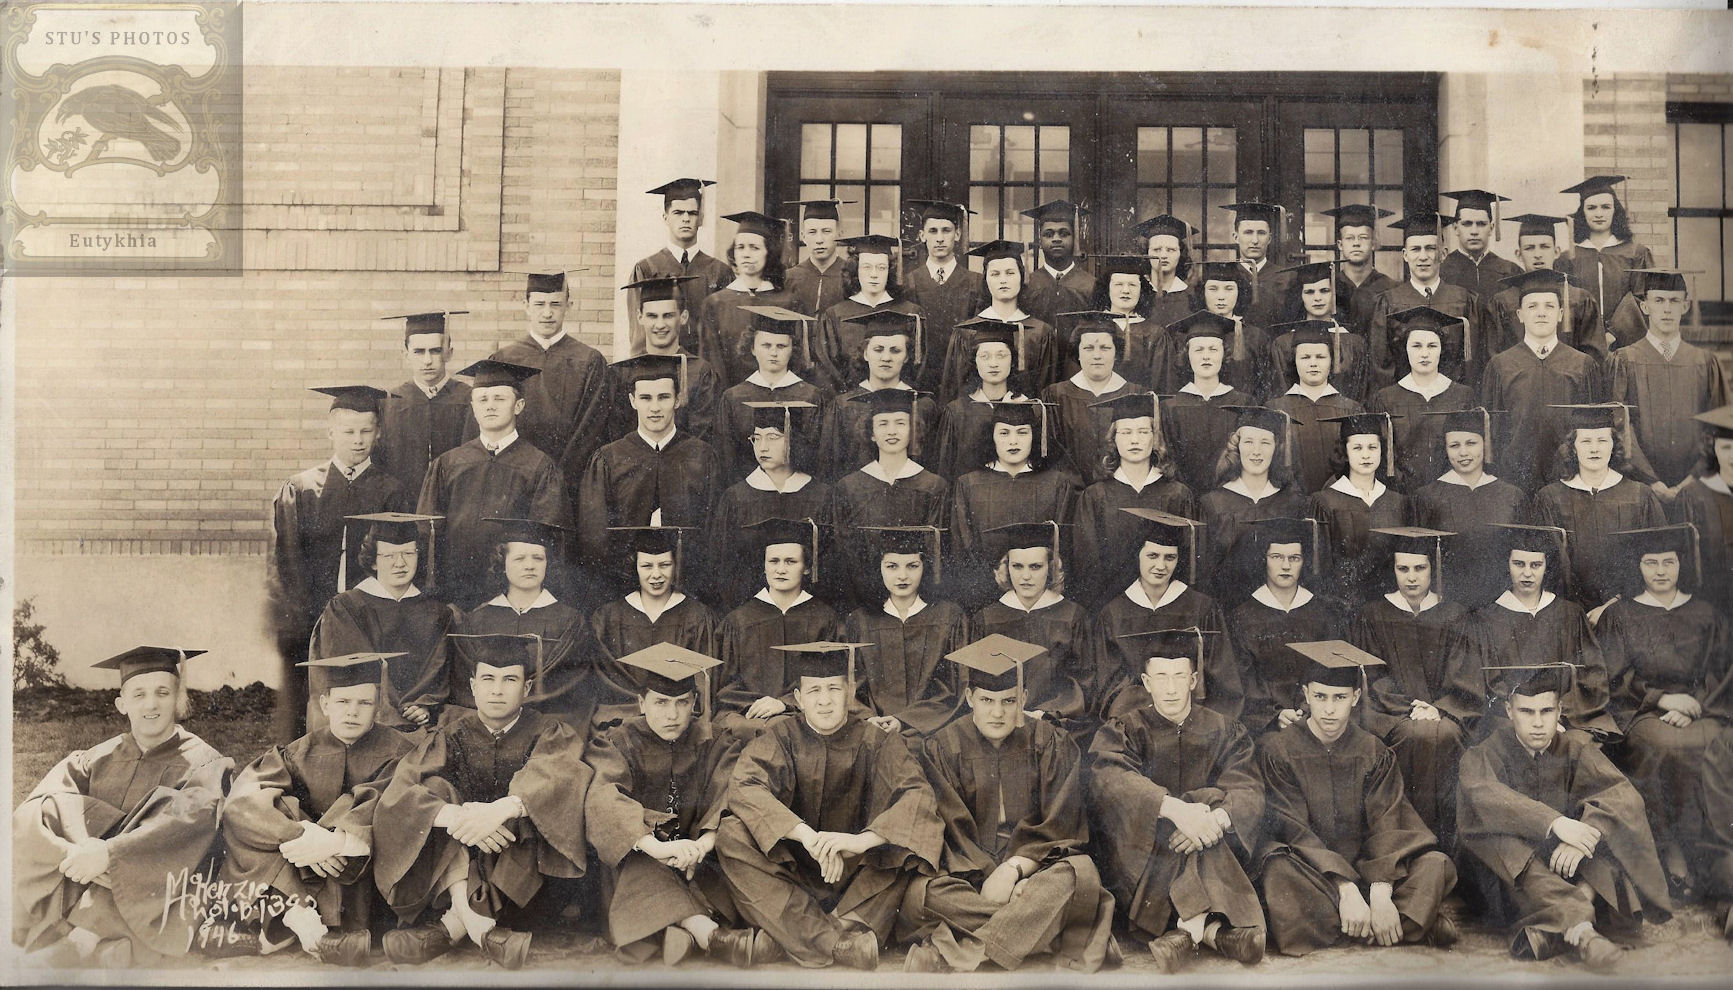 1946 Photograph, Morgan Park High School, Duluth,
                MN Graduation Class